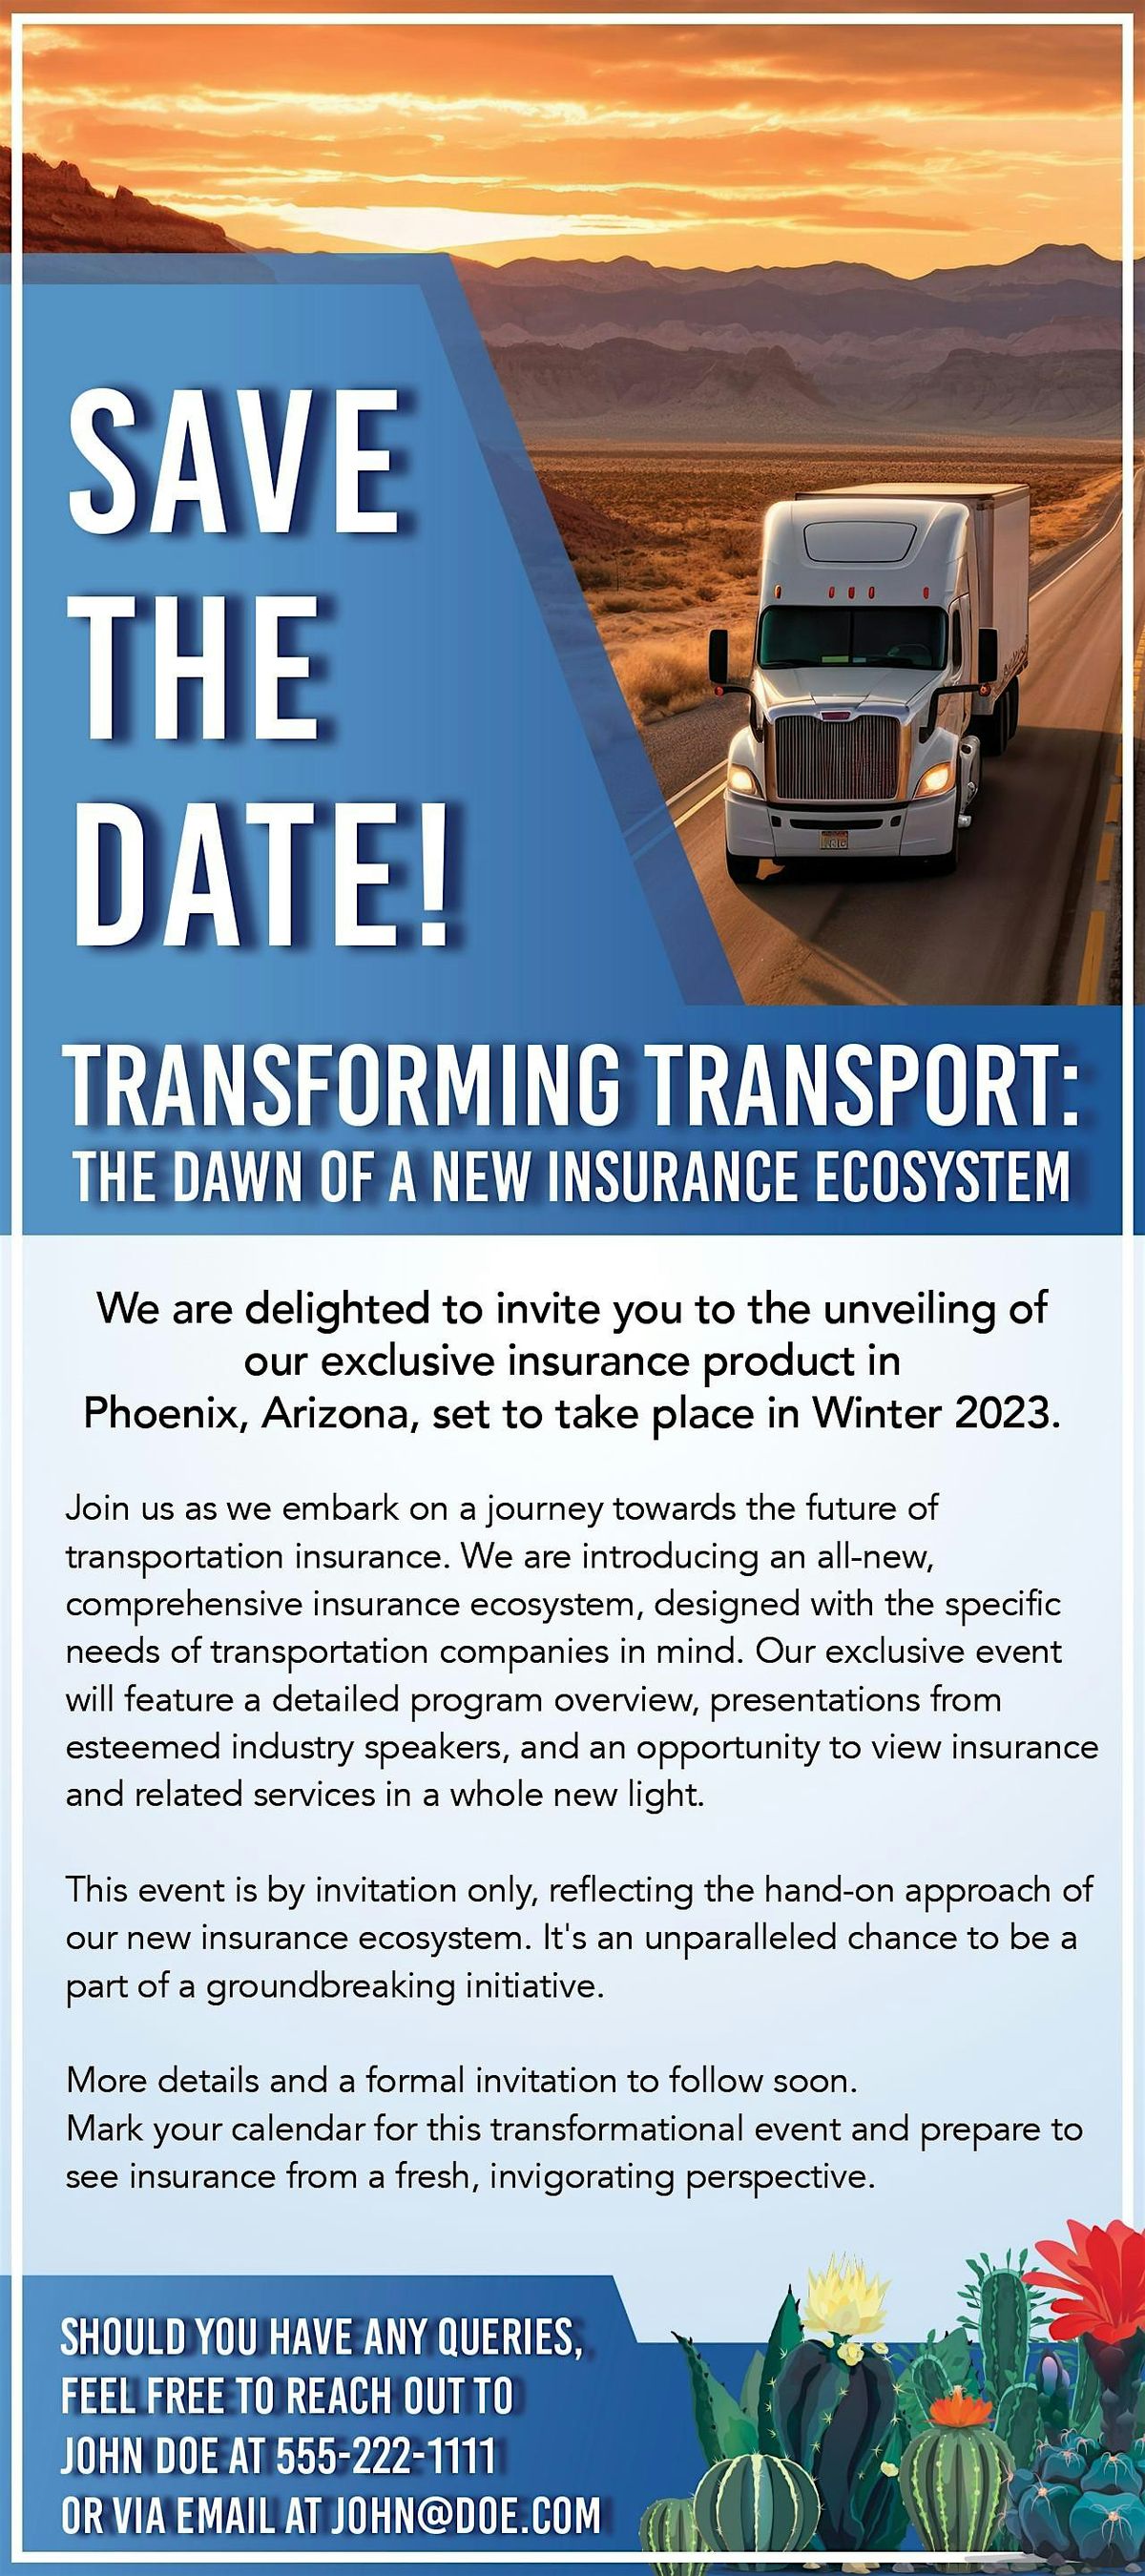 Transportation Innovation Insurance Symposium